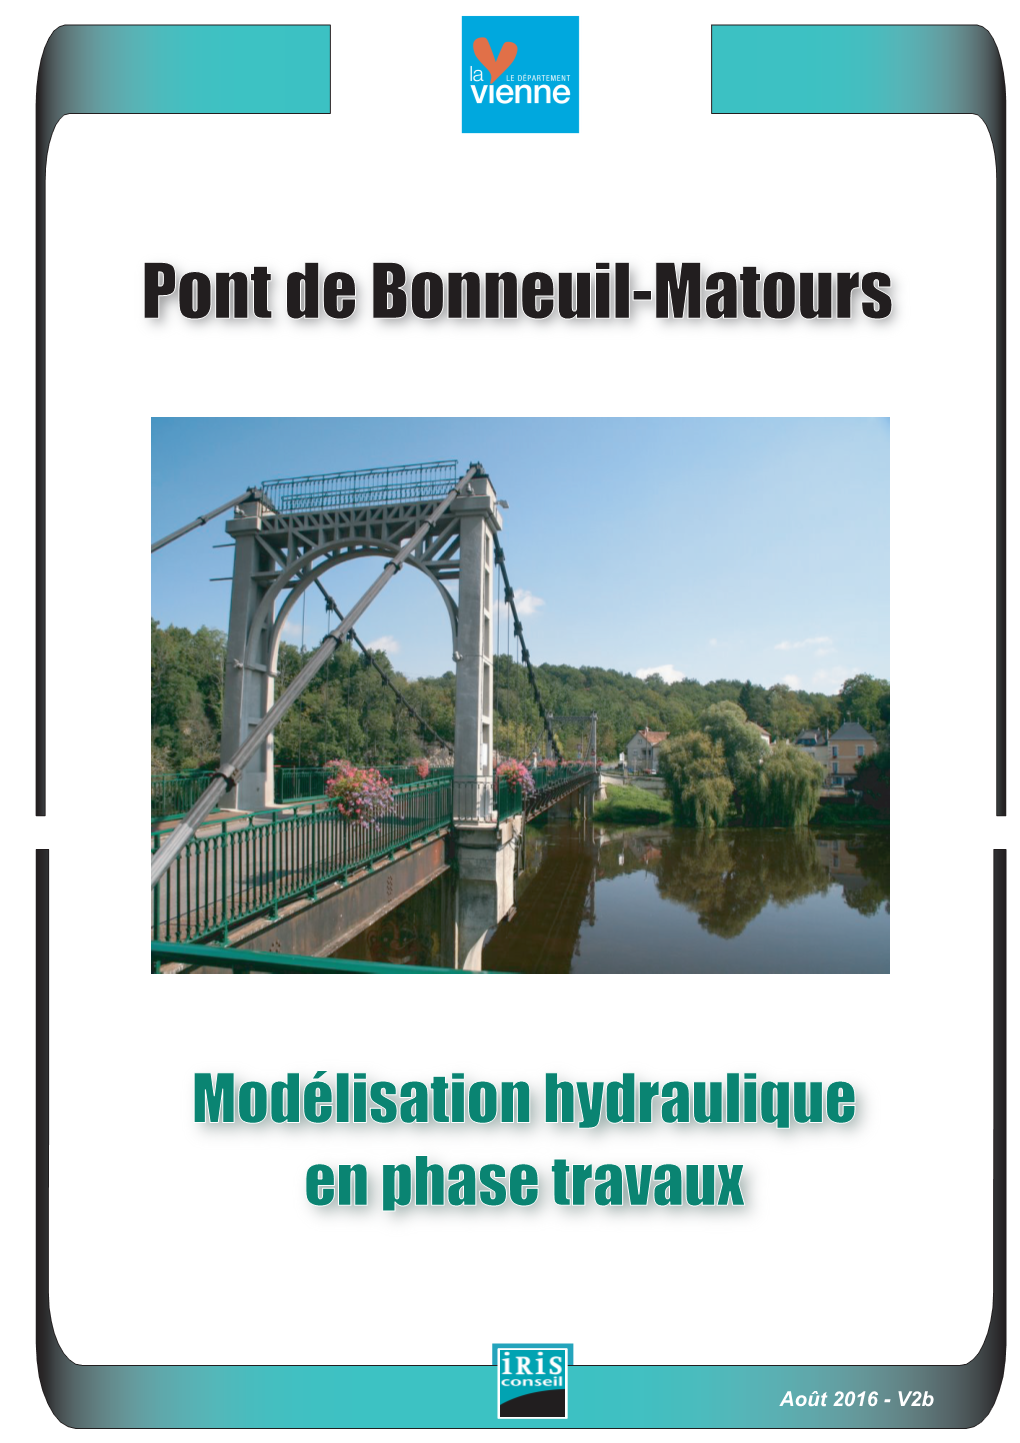 Pont De Bonneuil-Matours